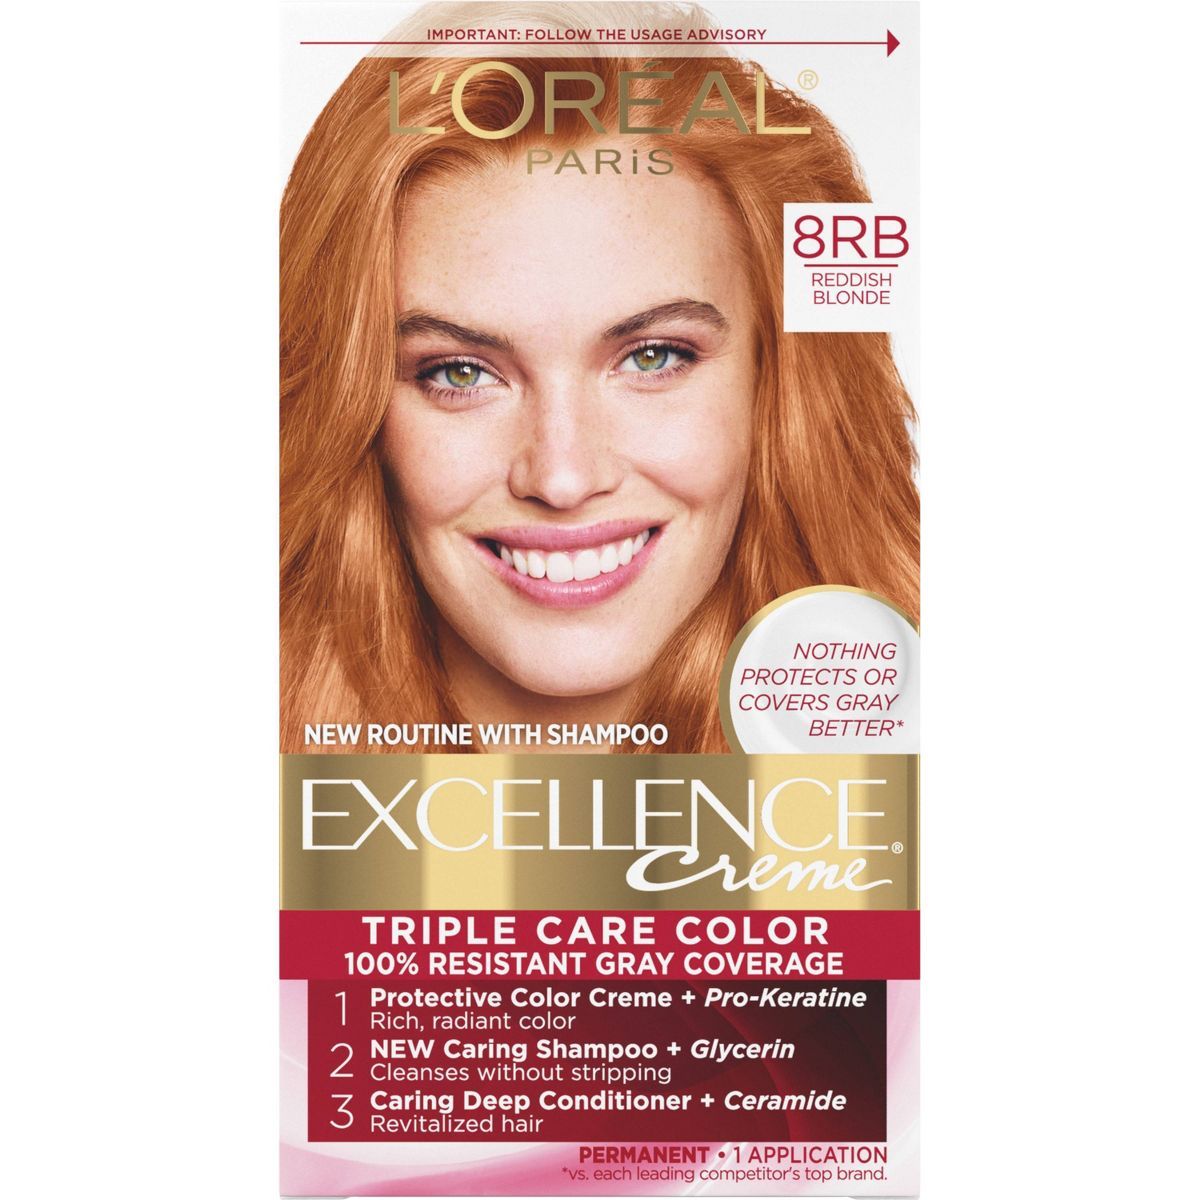 L'Oreal Paris Excellence Triple Protection Permanent Hair Color - 6.3 fl oz | Target